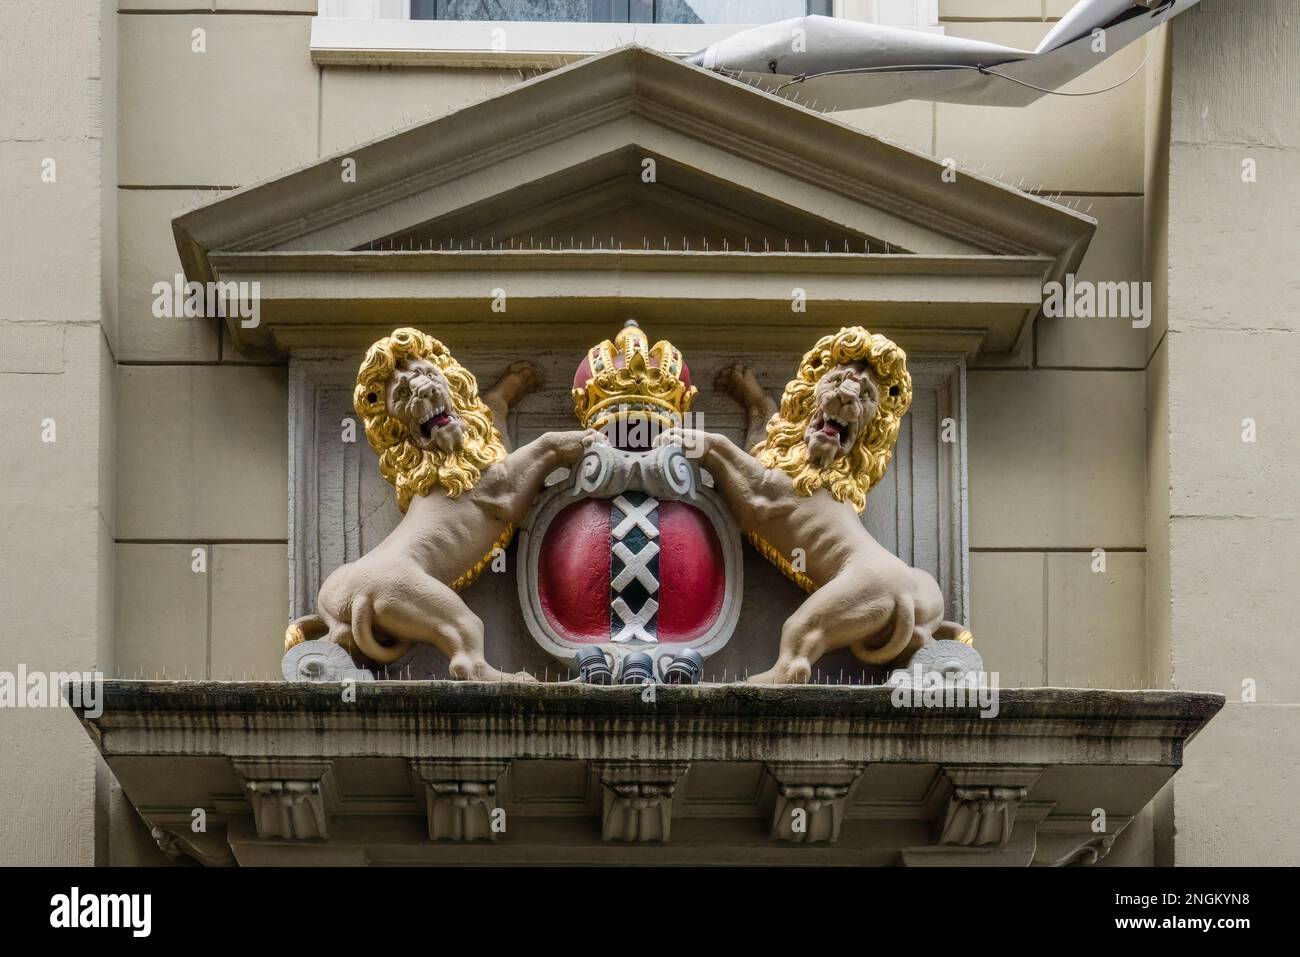 Armoiries d'Amsterdam : bouclier rouge et noir pâle avec trois croix de Saint André argentées, la couronne impériale d'Autriche et deux lions, Amsterdam Banque D'Images